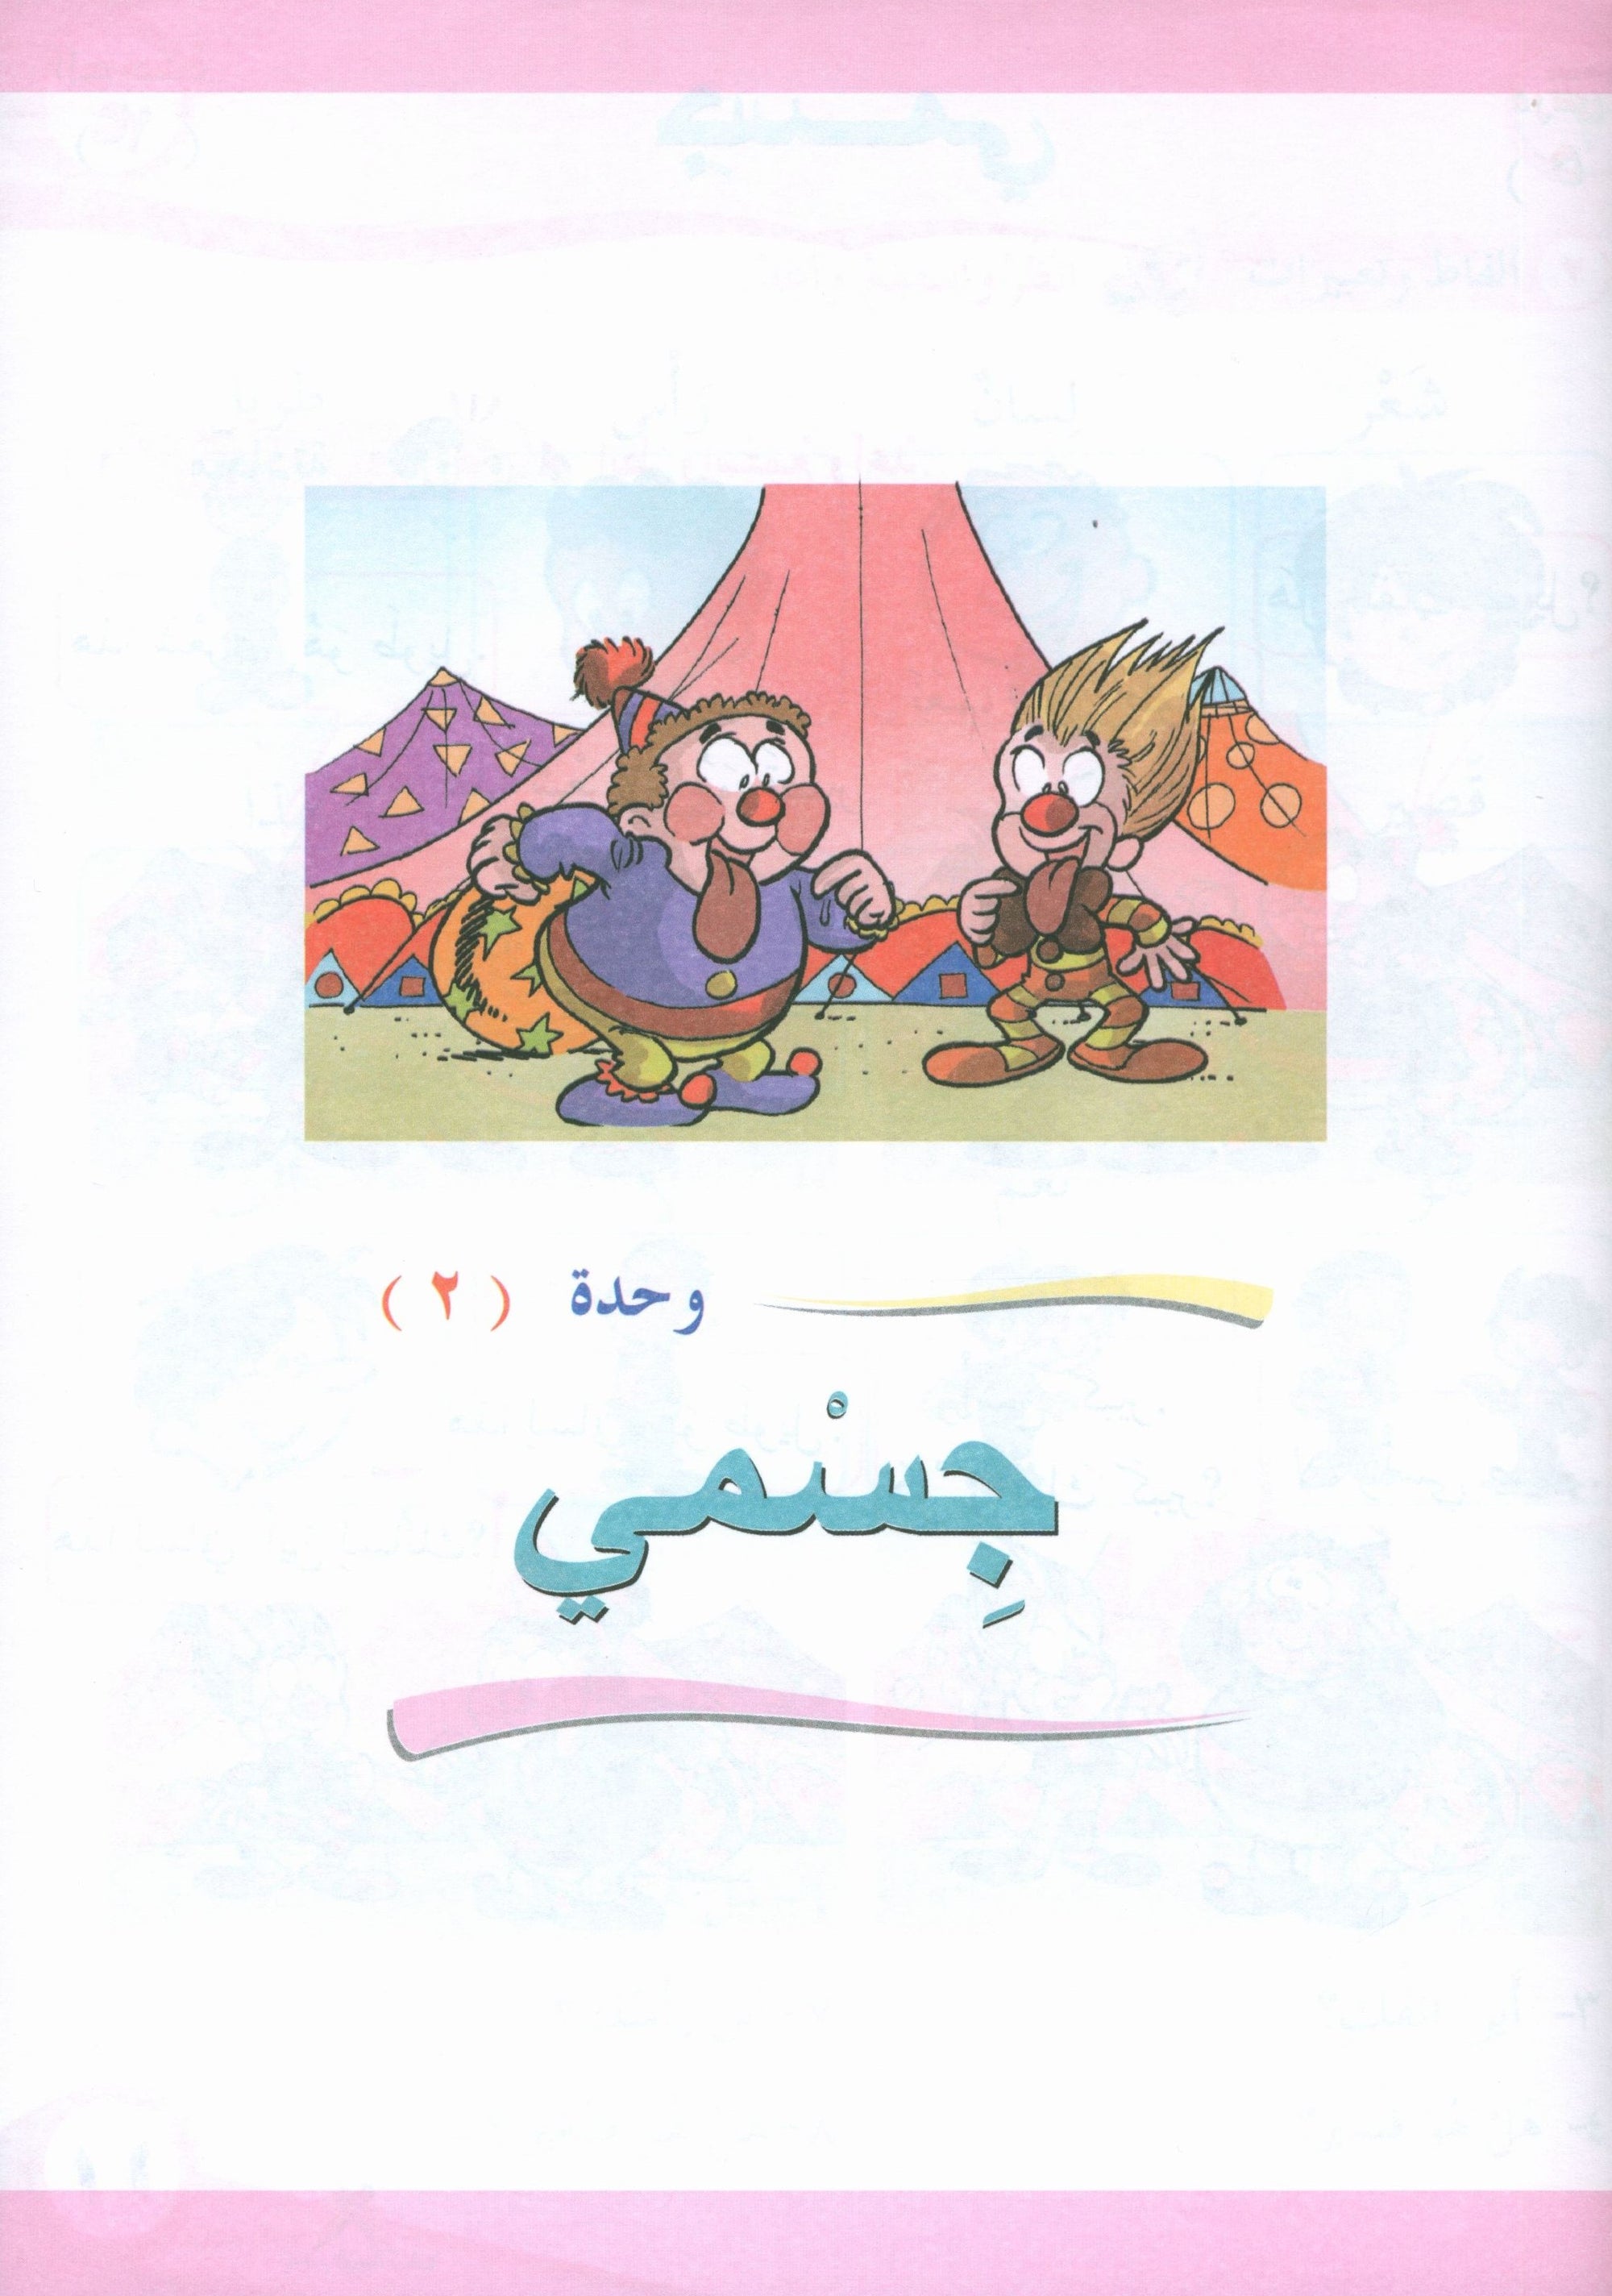 ICO Learn Arabic Textbook Level 1 Part 1 تعلم العربية كتاب التلميذ